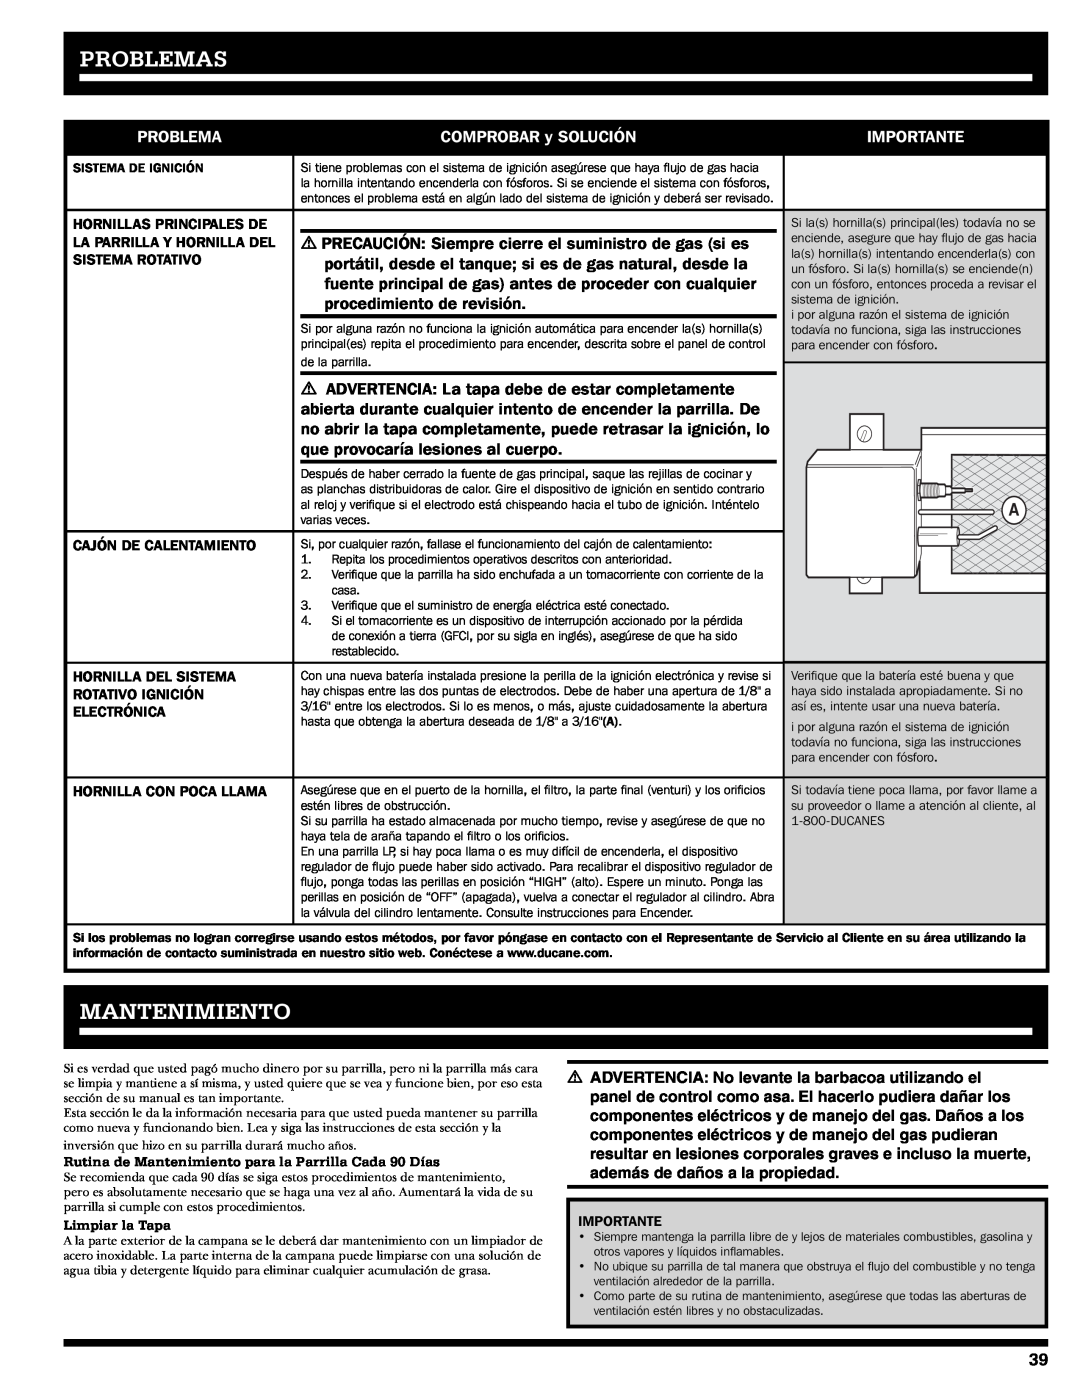 Ducane 2020805 Problemas, Mantenimiento, COMPROBAR y SOLUCIÓN, Importante, procedimiento de revisión, Sistema Rotativo 